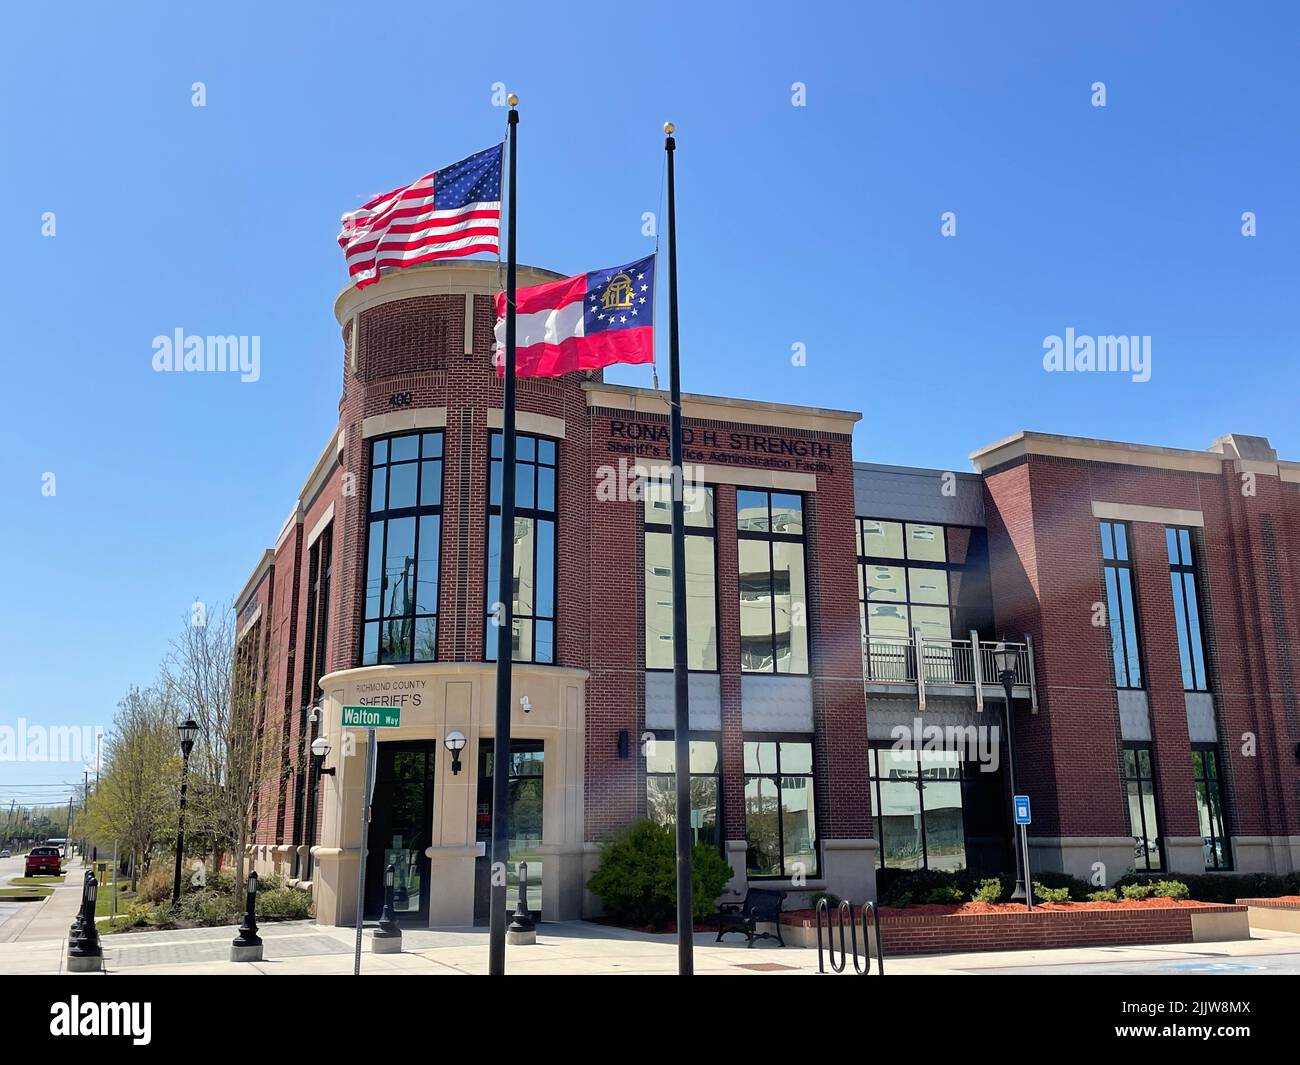 Augusta, GA USA - 03 27 22: Richmond contea sceriffs dipartimento chiaro blu bandiere del cielo ondeggiante Foto Stock